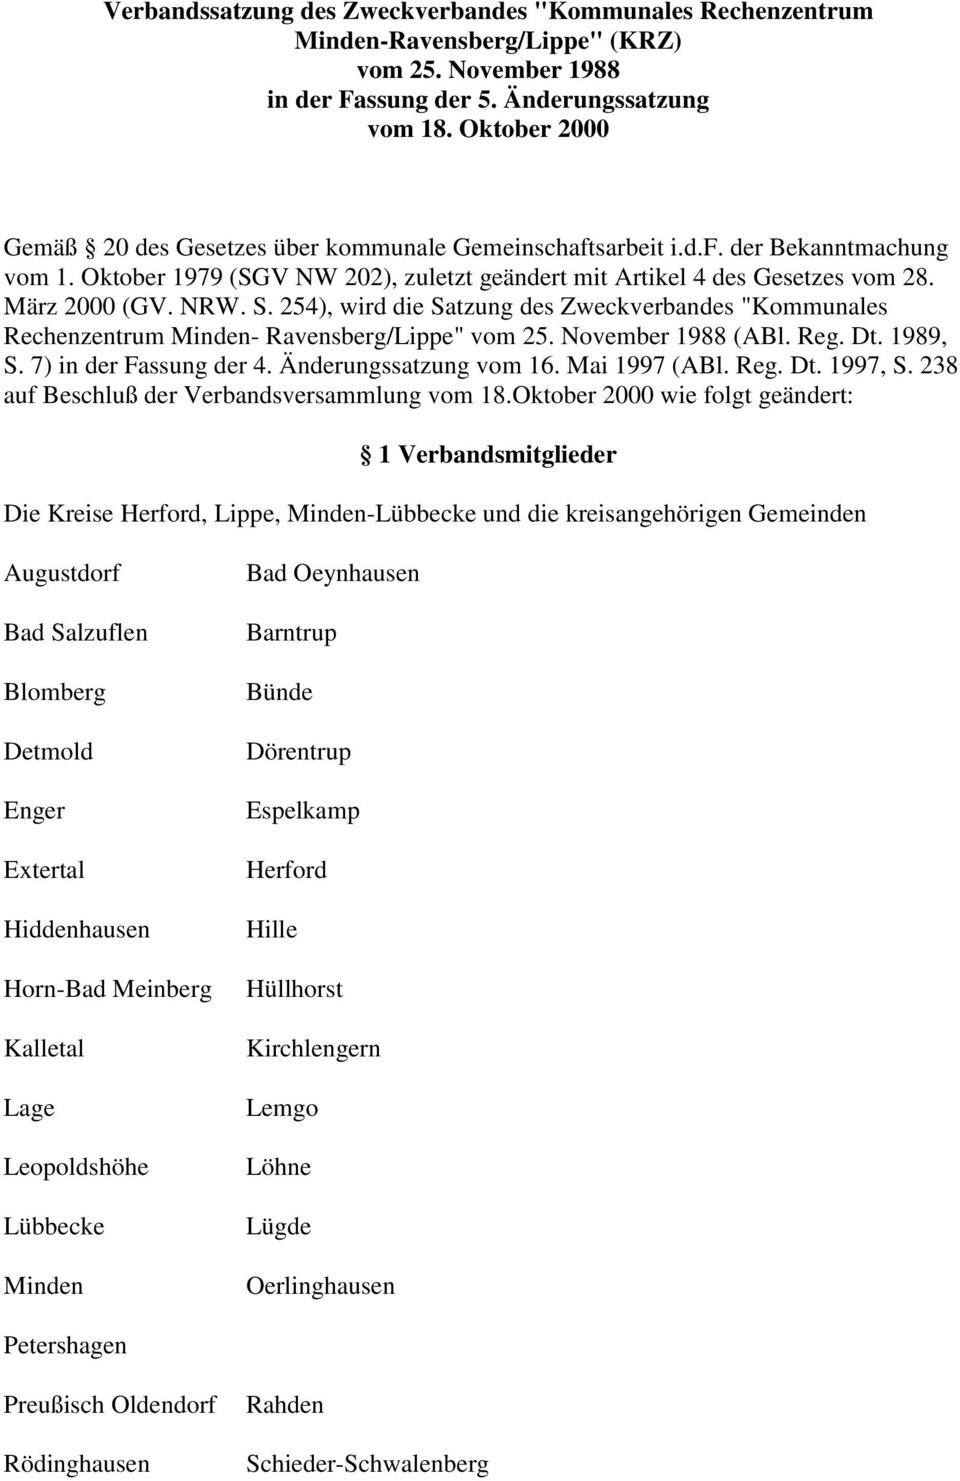 NRW. S. 254), wird die Satzung des Zweckverbandes "Kommunales Rechenzentrum Minden- Ravensberg/Lippe" vom 25. November 1988 (ABl. Reg. Dt. 1989, S. 7) in der Fassung der 4. Änderungssatzung vom 16.